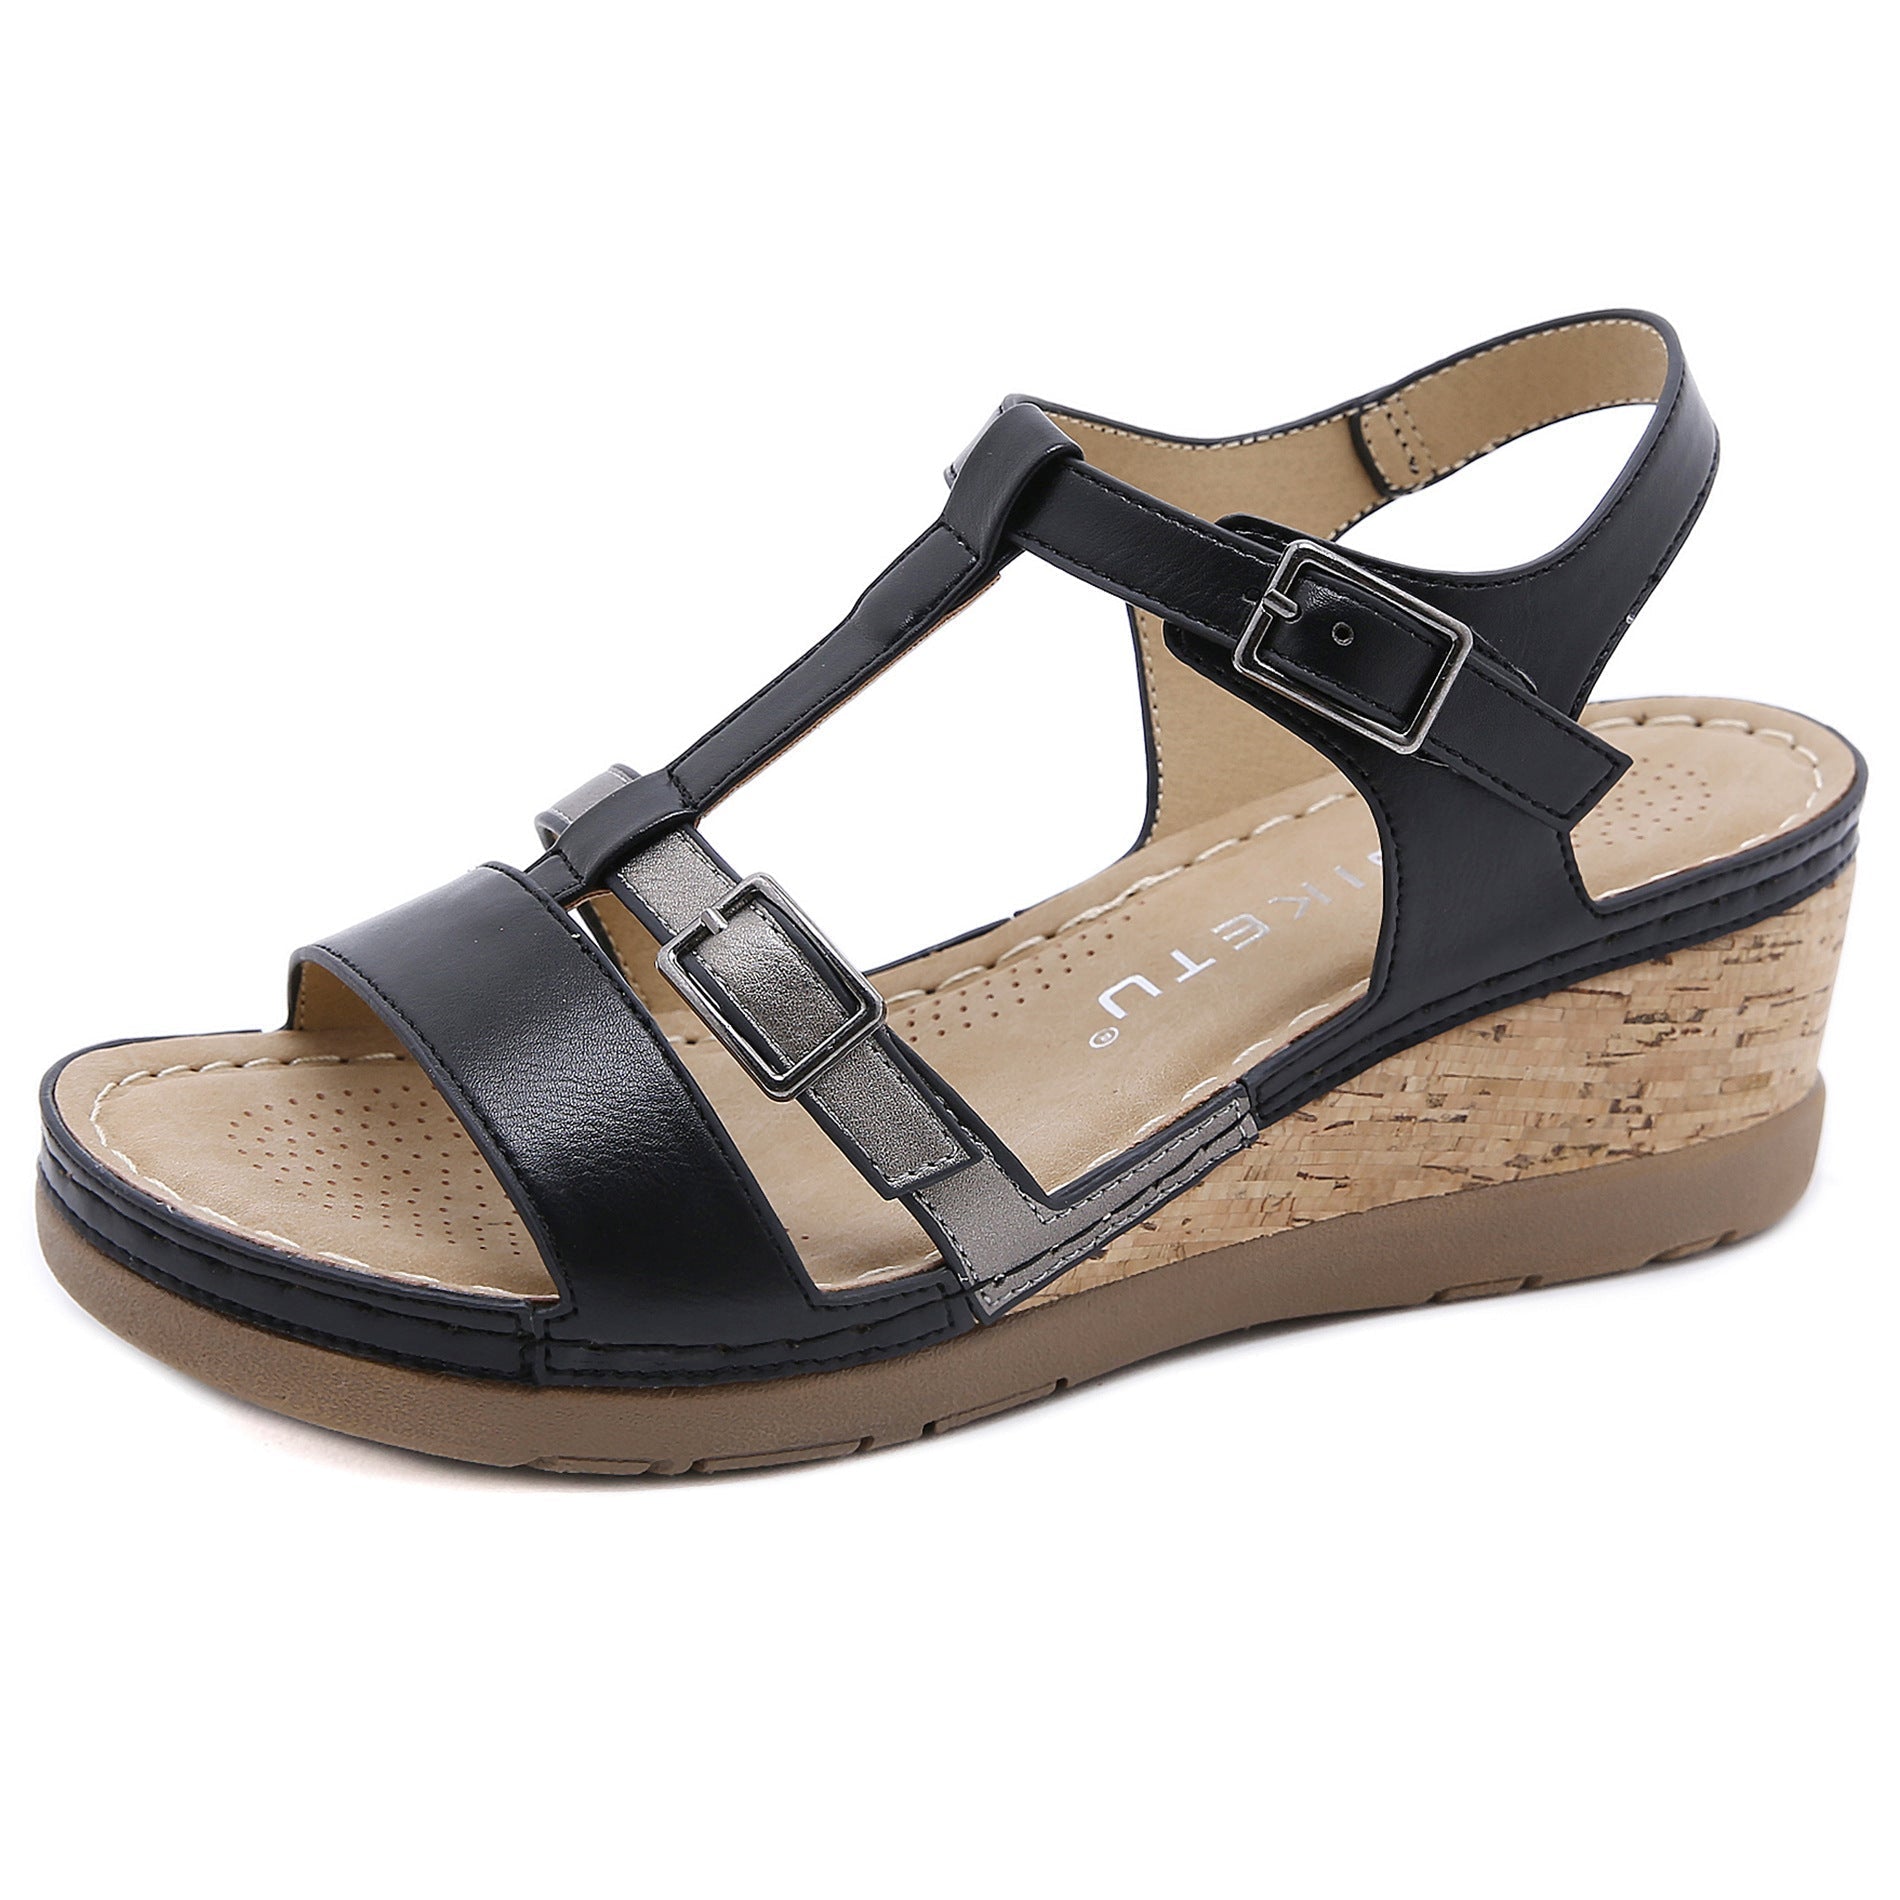  Summer Wedge Colorblock Comfort Sandals